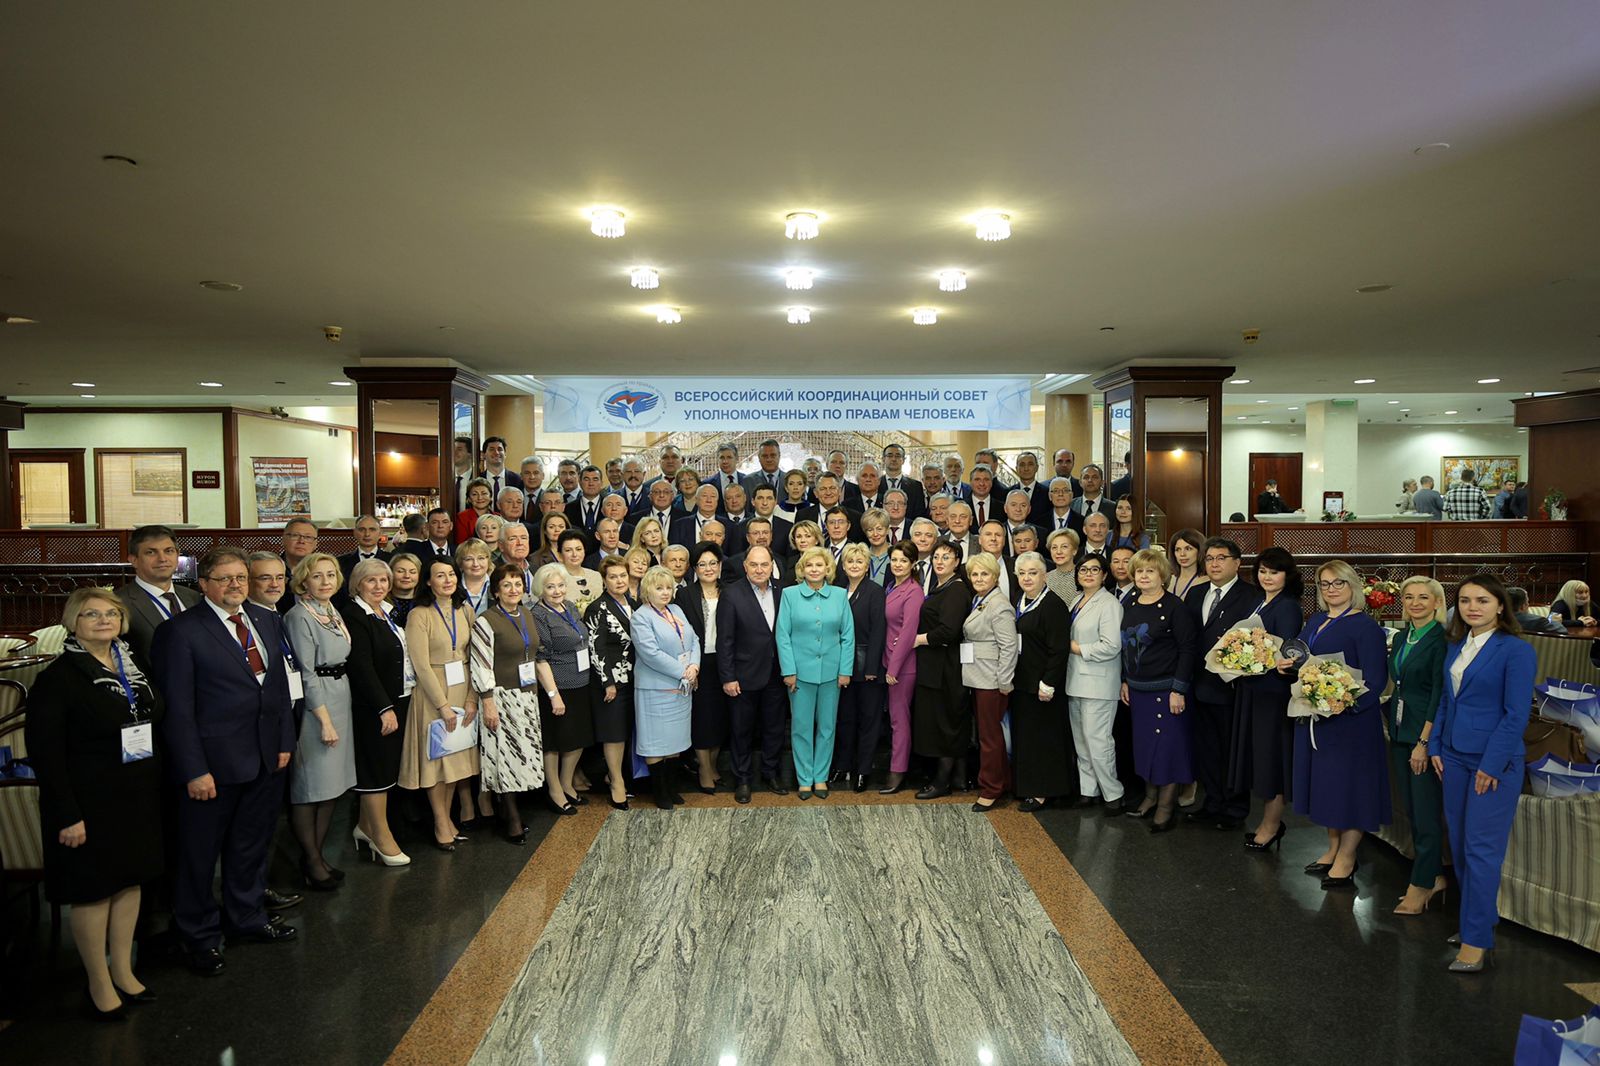 Уполномоченный принимает участие во Всероссийском координационном совете уполномоченных по правам человека